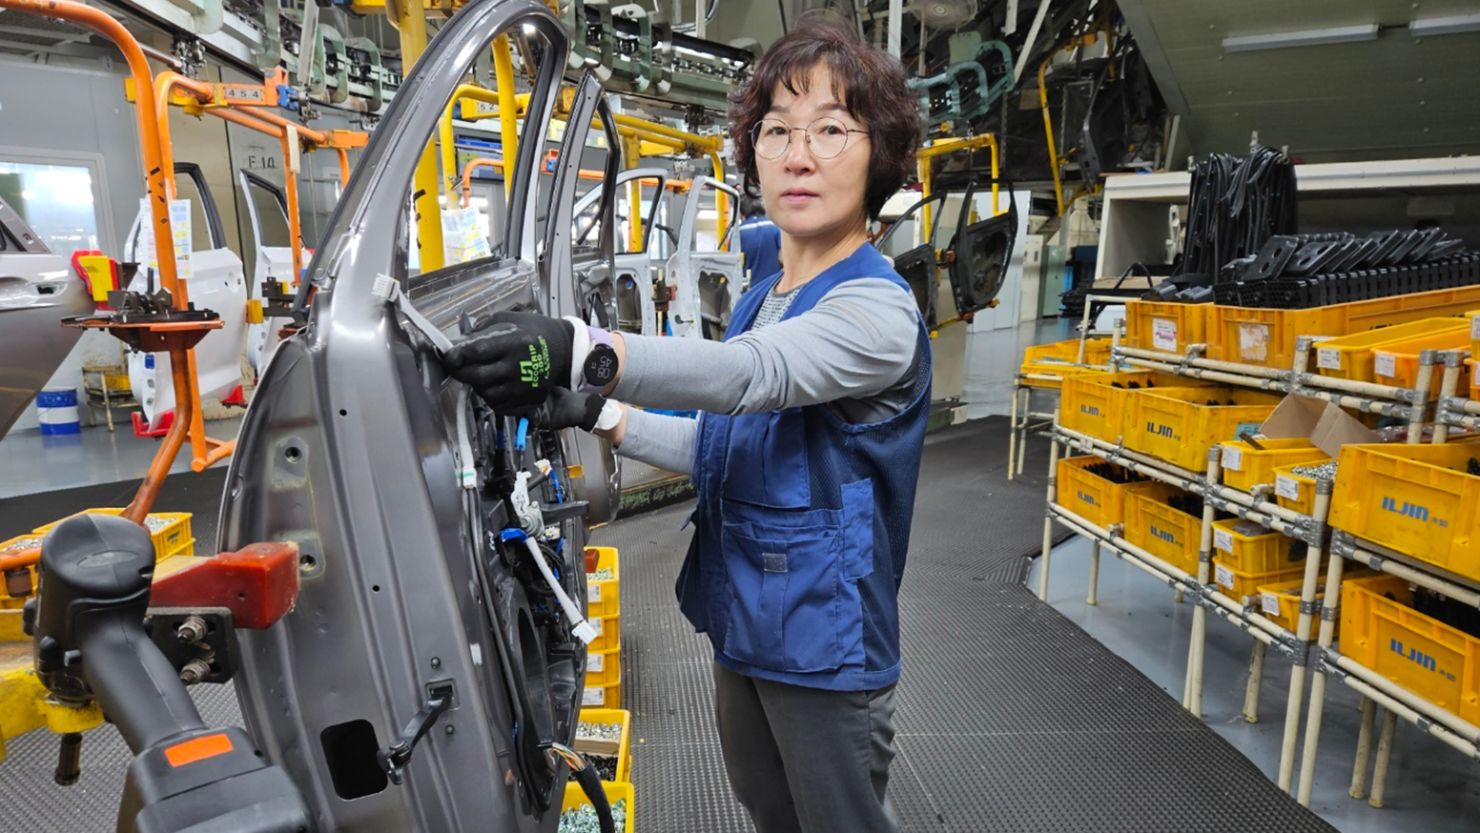 Hwang Ji-sun is a production worker for Hyundai Motor in Ulsan, South Korea.